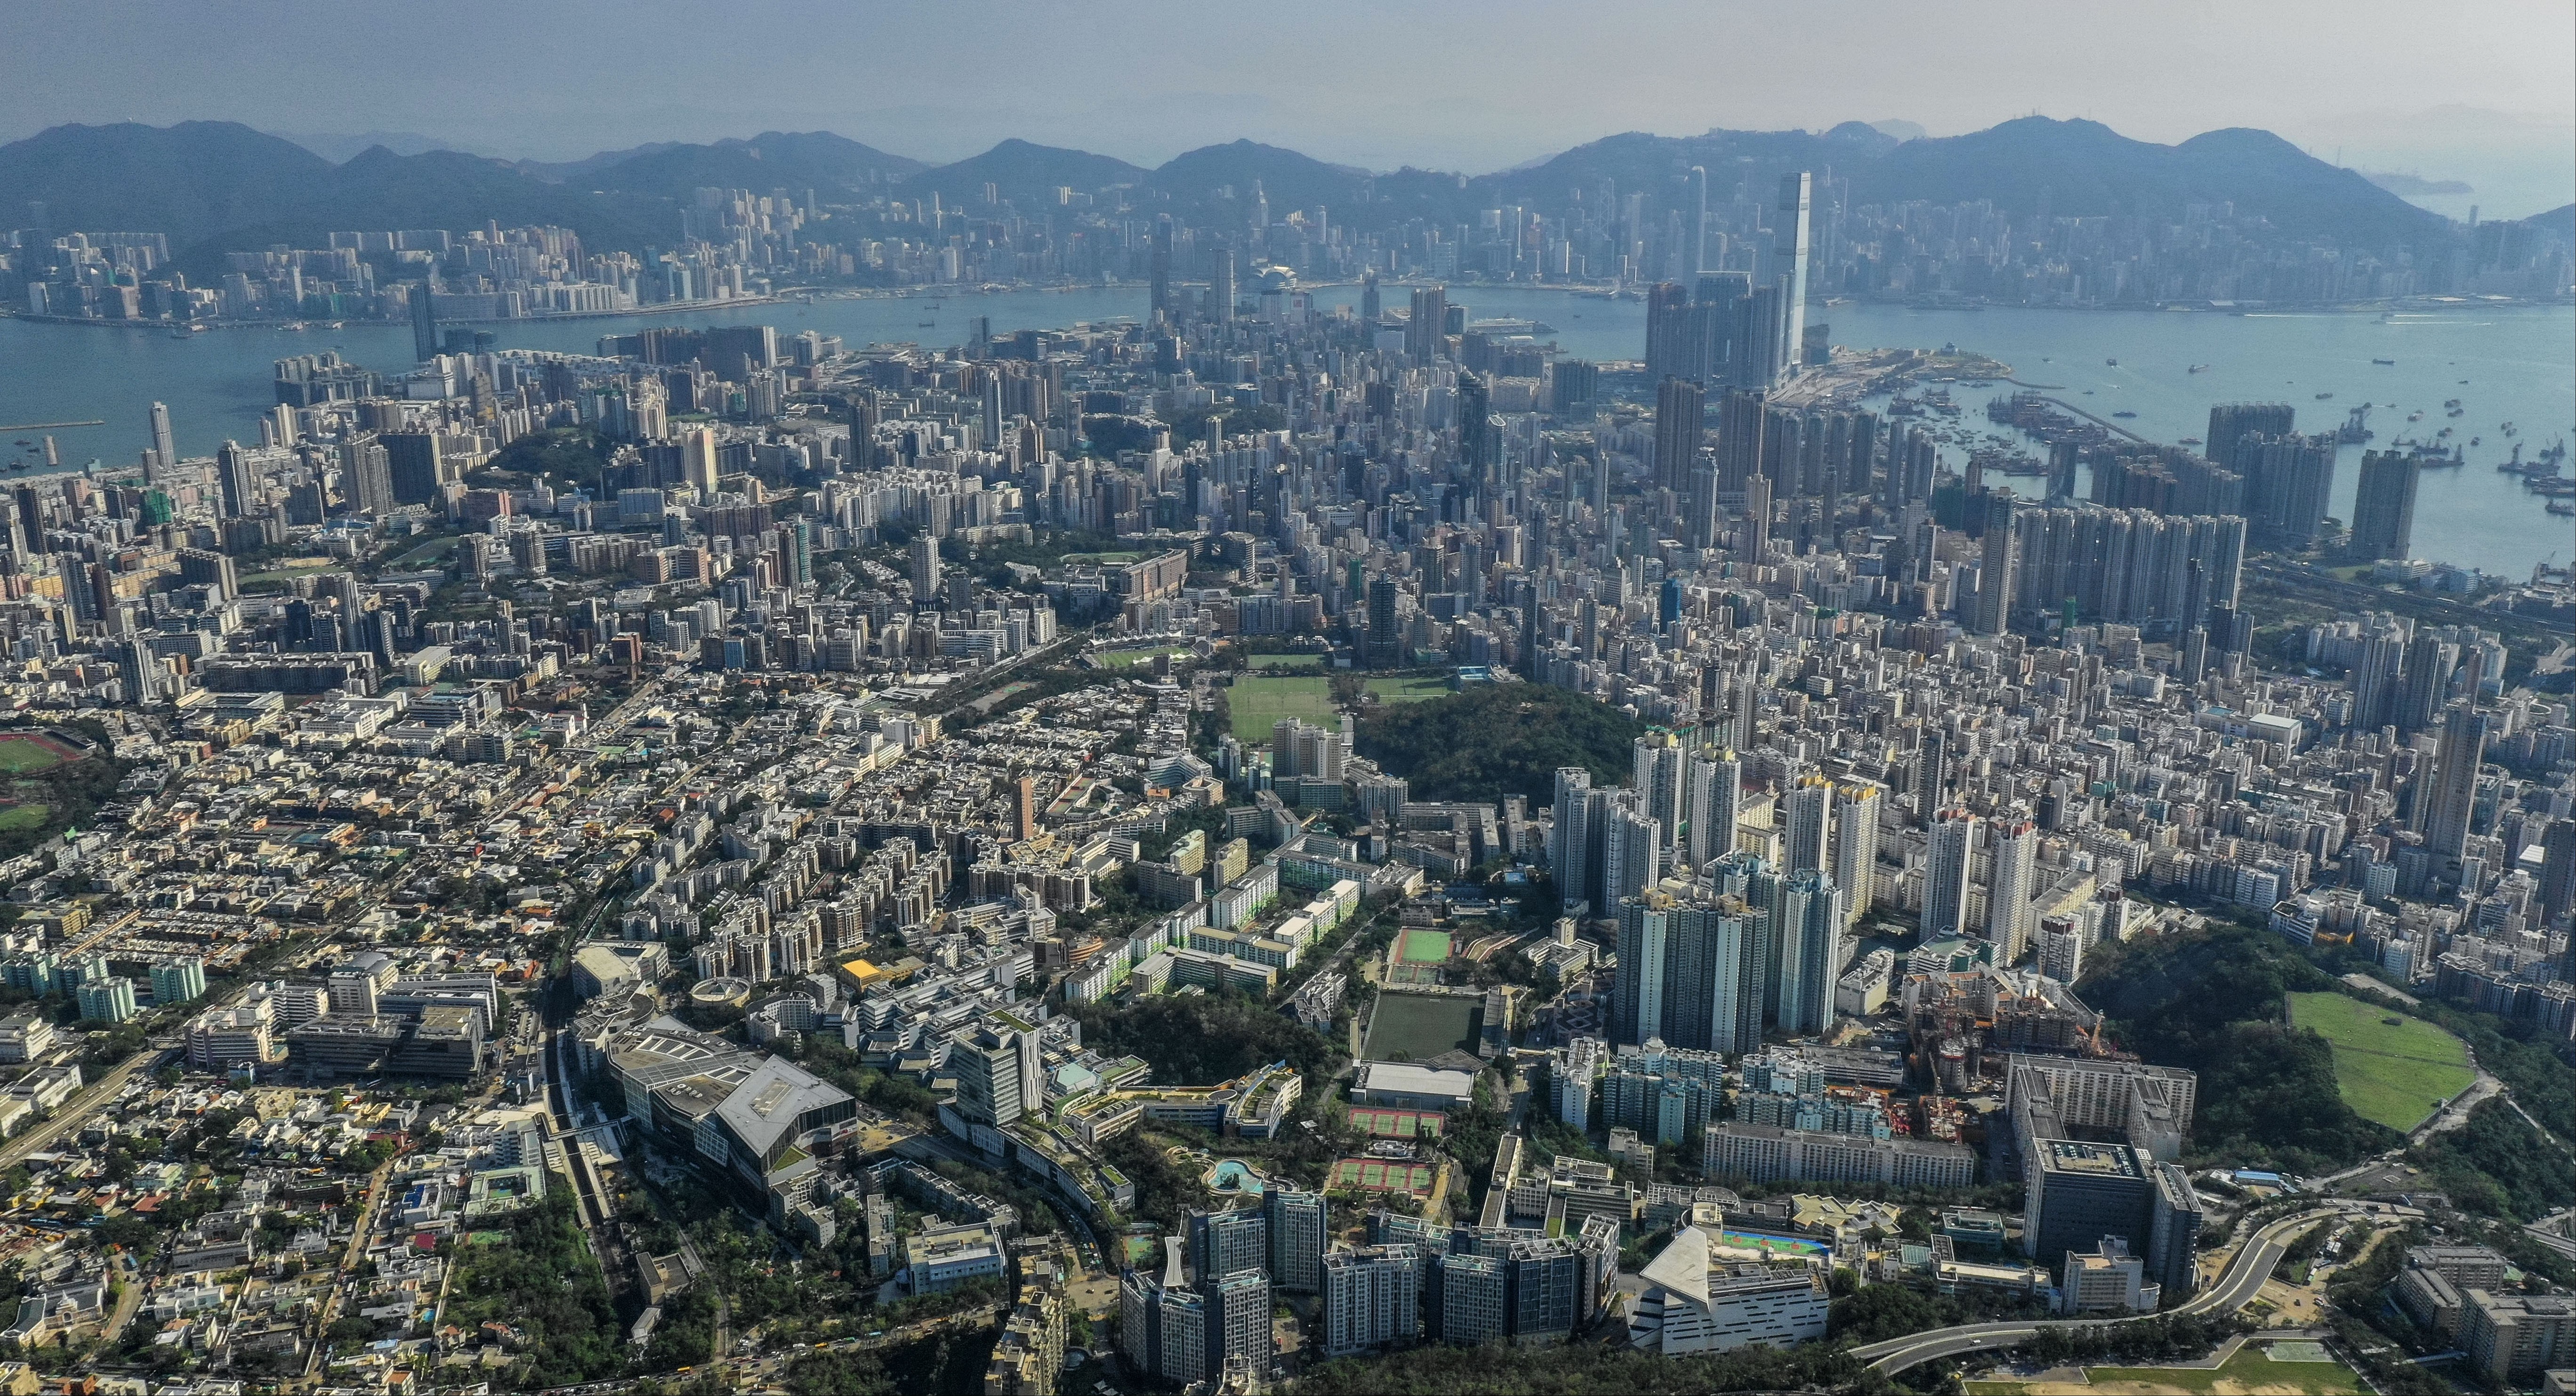 Aerial view of Hong Kong's Kowloon peninsula. Photo: Roy Issa